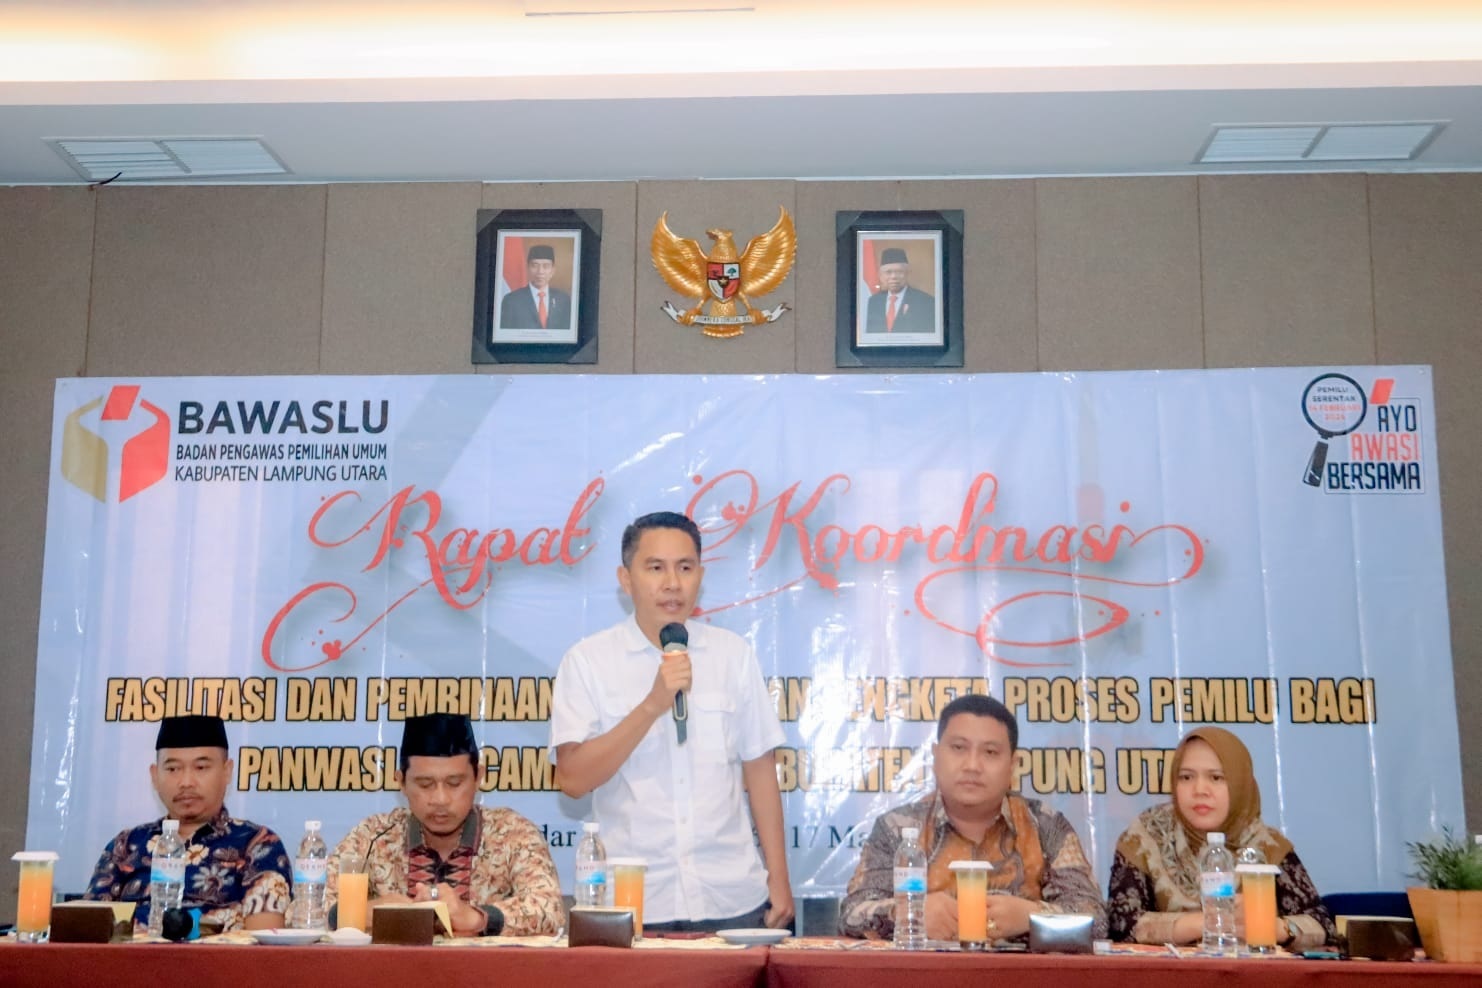 Bawaslu Lampung